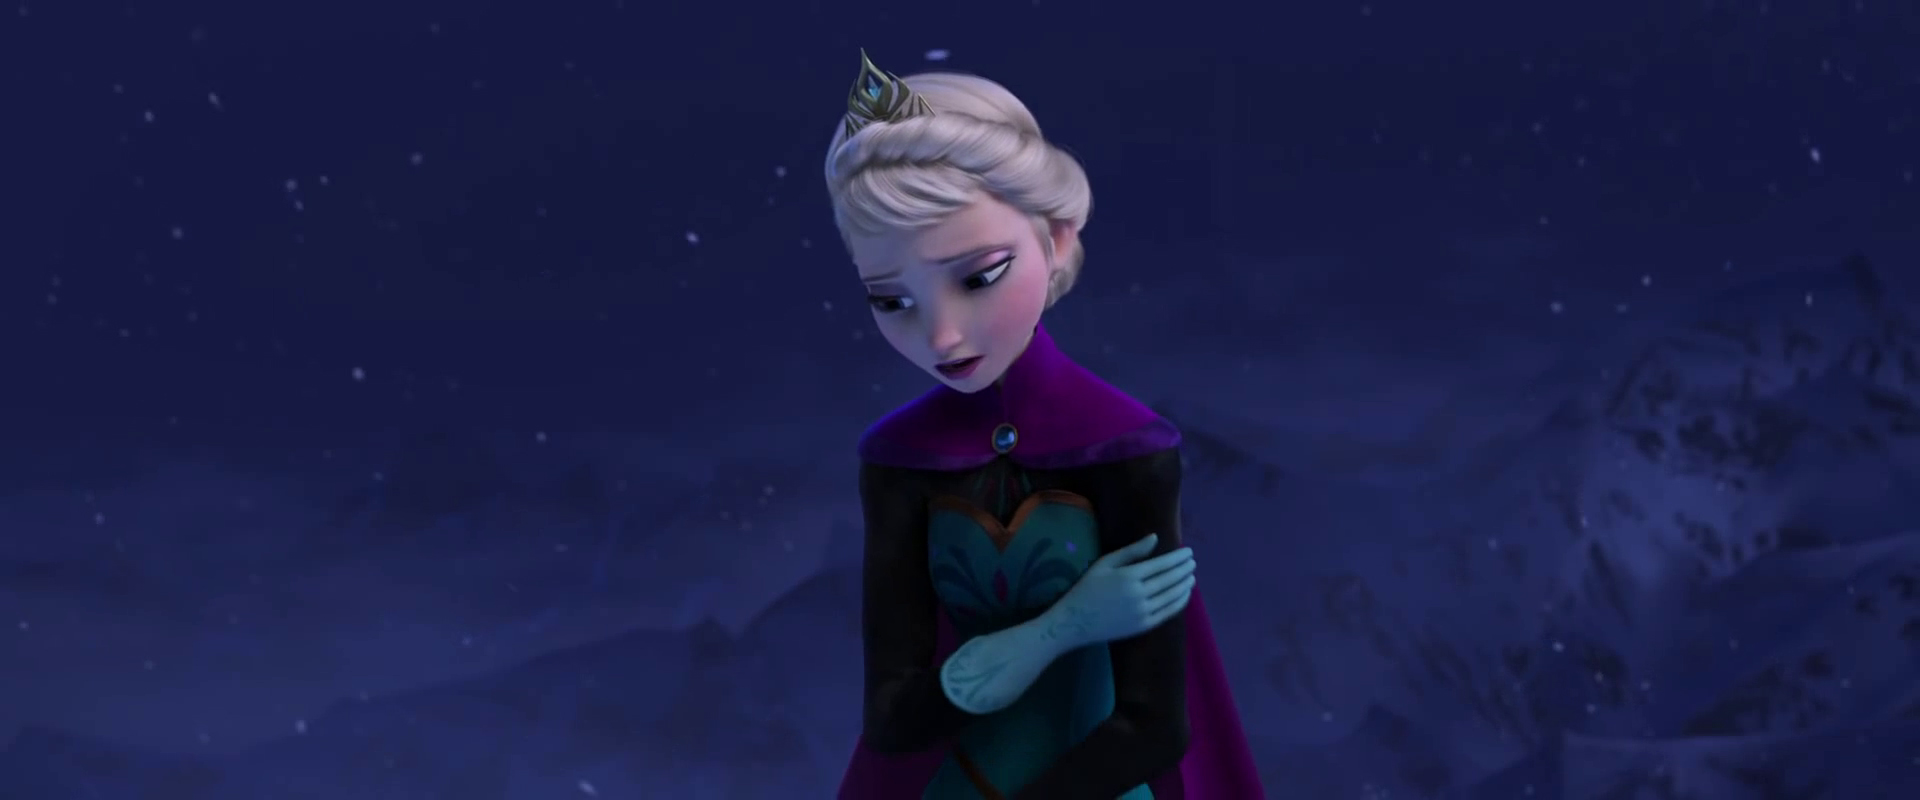 Elsa - Công chúa Elsa - nàng công chúa với sức mạnh băng và tuyết sẽ khiến bạn say đắm vì sự quyến rũ và đẹp đẽ của mình. Đừng bỏ lỡ hình ảnh của nàng công chúa này nhé!